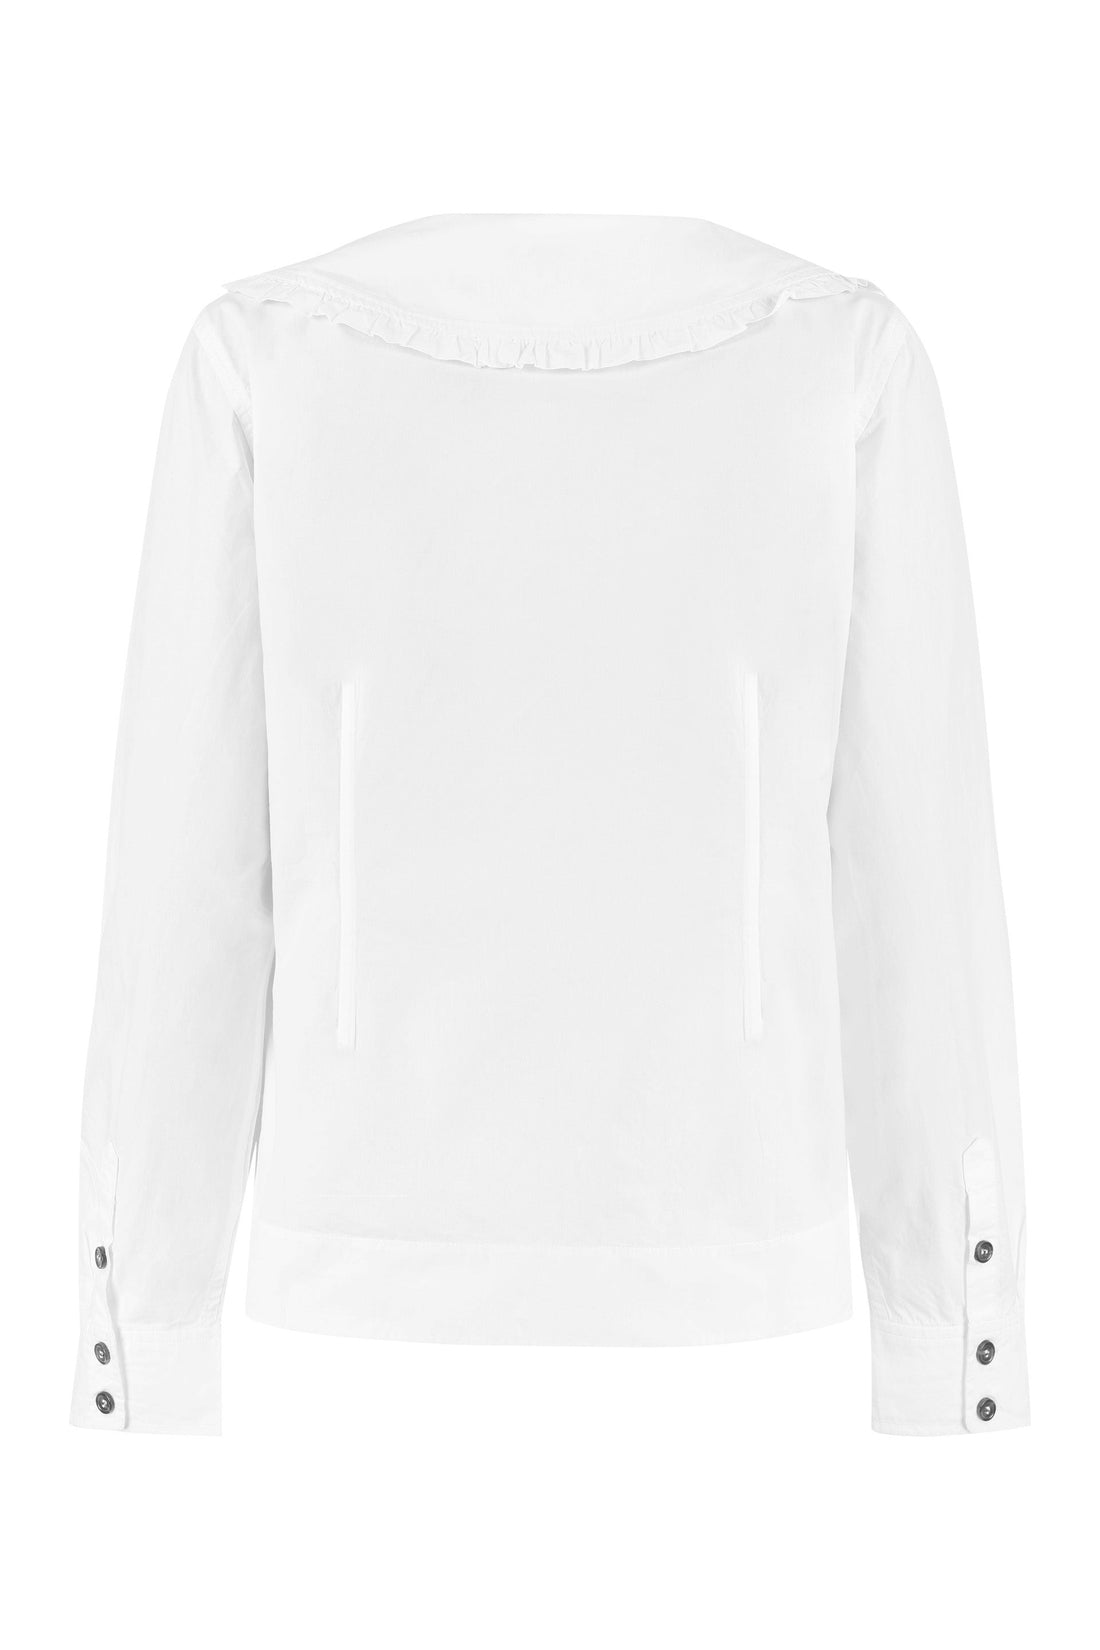 GANNI-OUTLET-SALE-Cotton poplin shirt-ARCHIVIST